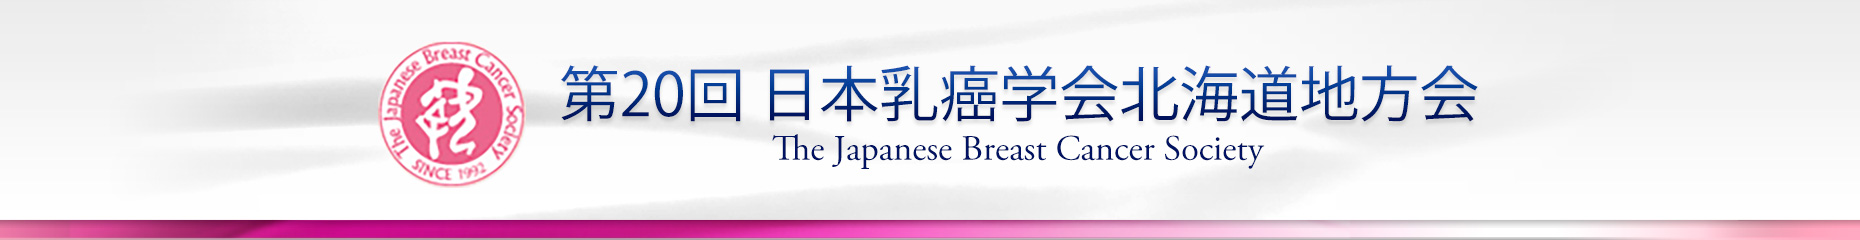 第20回日本乳癌学会北海道地方会